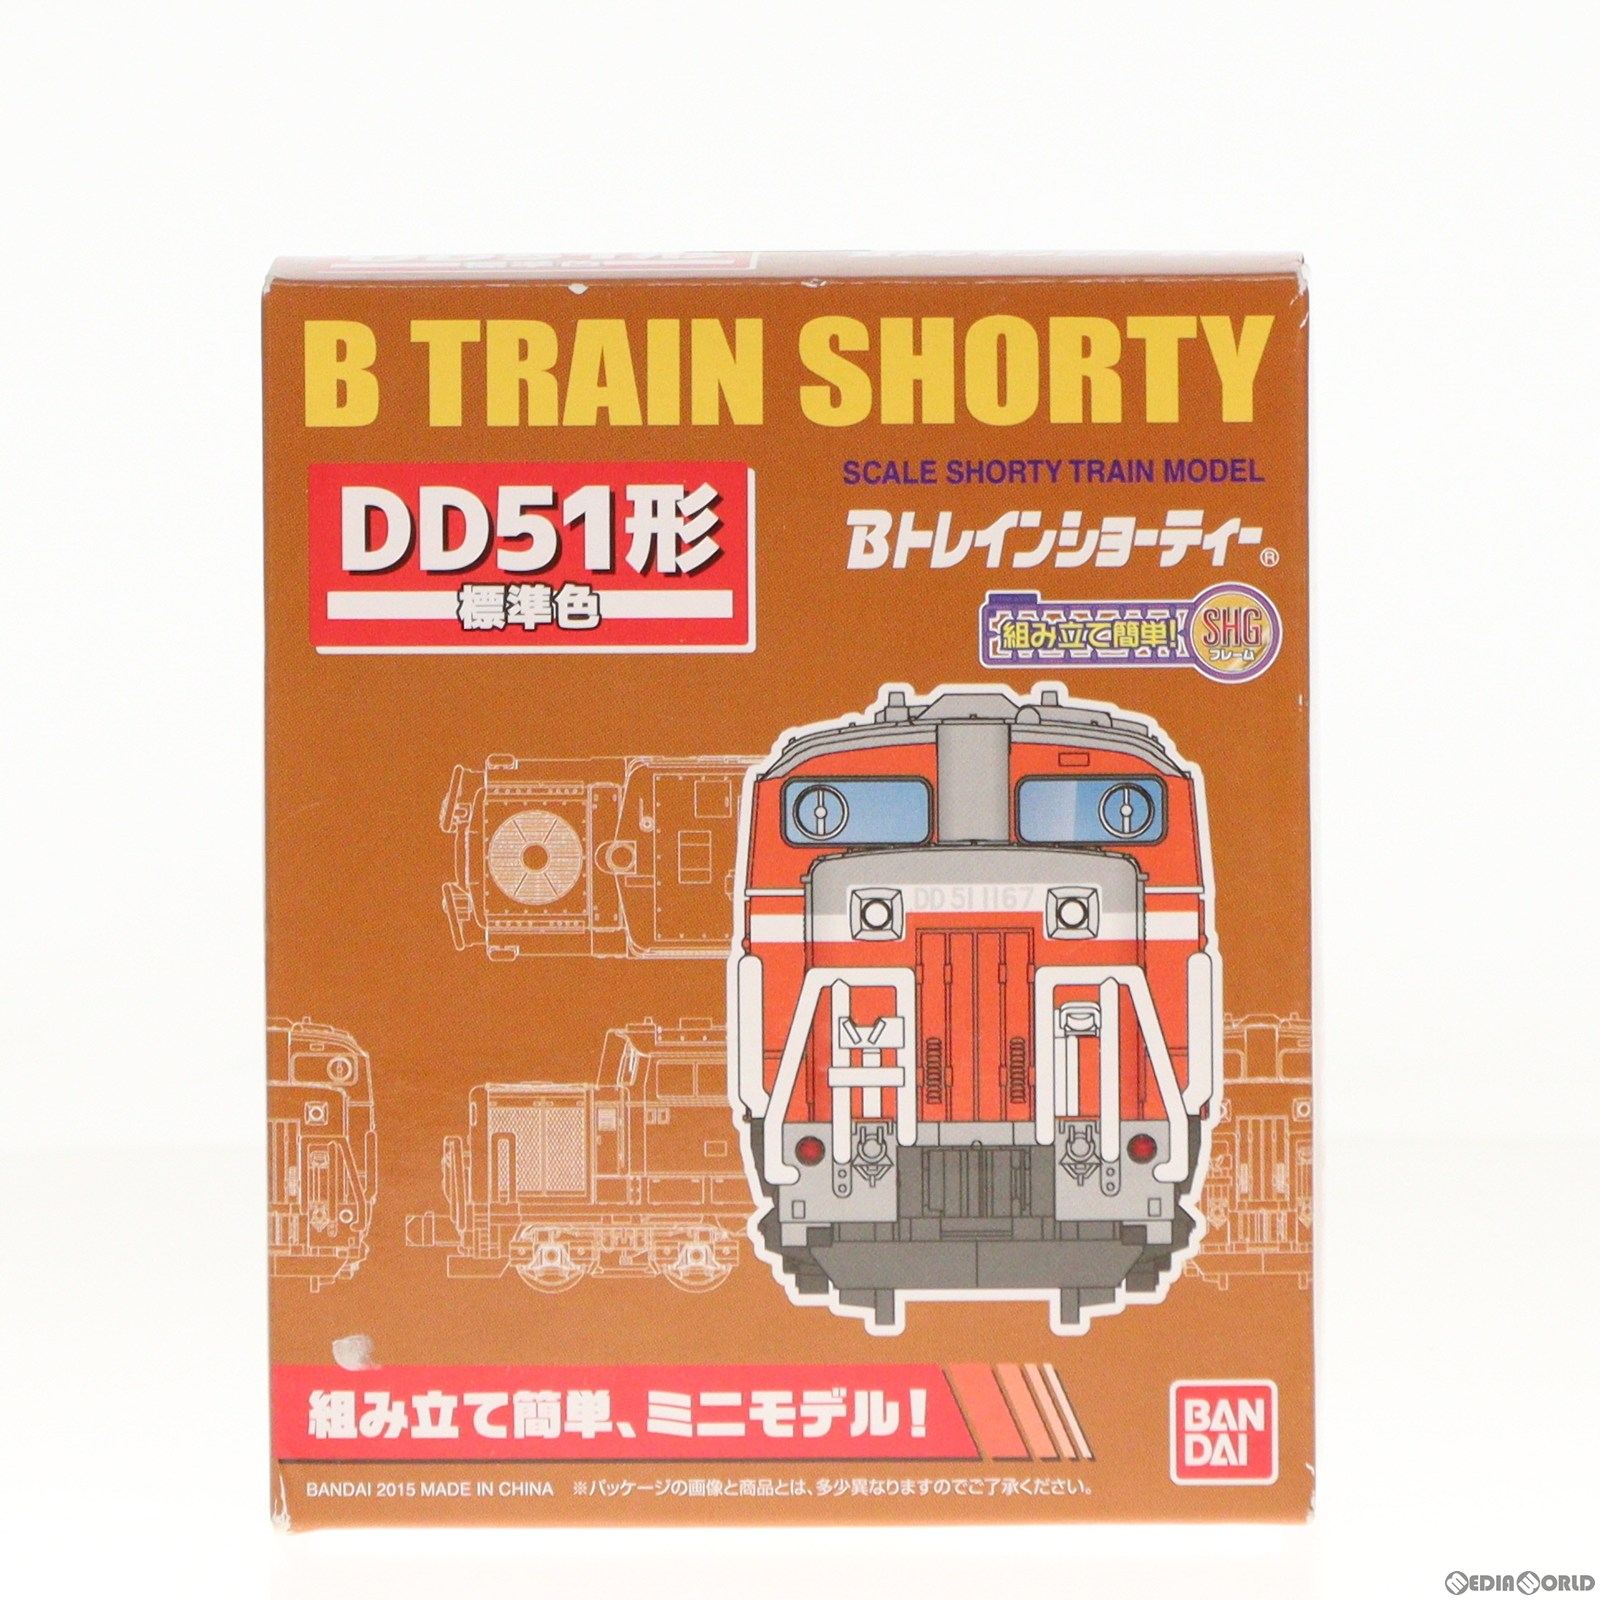 【中古即納】[RWM]963628 Bトレインショーティー DD51形 標準色 組み立てキット Nゲージ 鉄道模型(20150607)